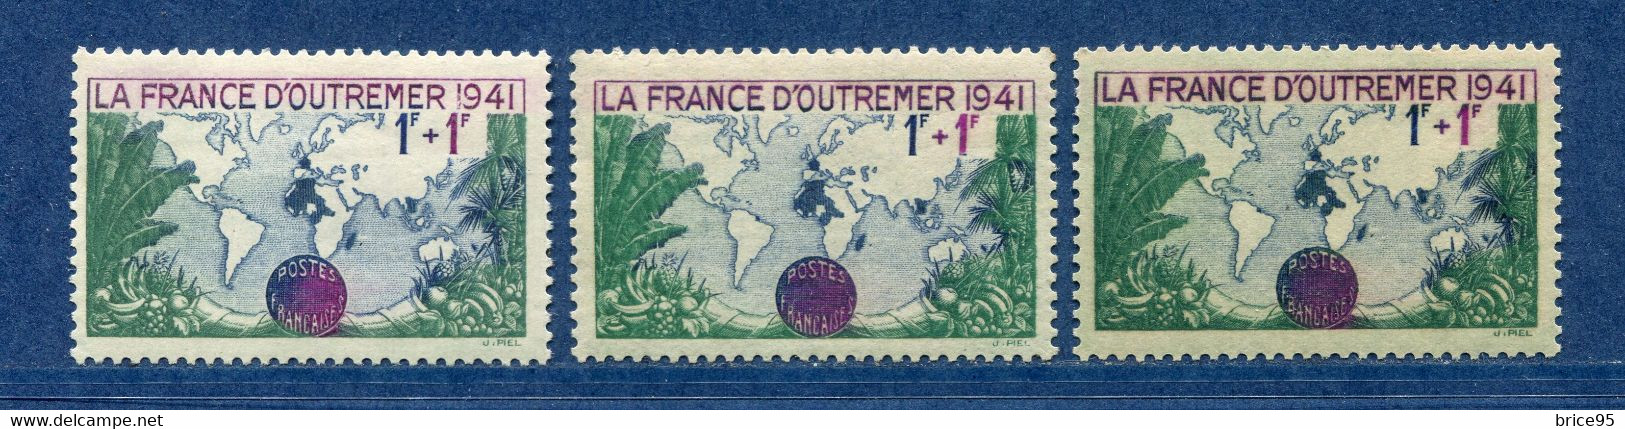 ⭐ France - Variété - YT N° 503 - Couleurs - Pétouille - Neuf Sans Charnière - 1941 ⭐ - Ongebruikt